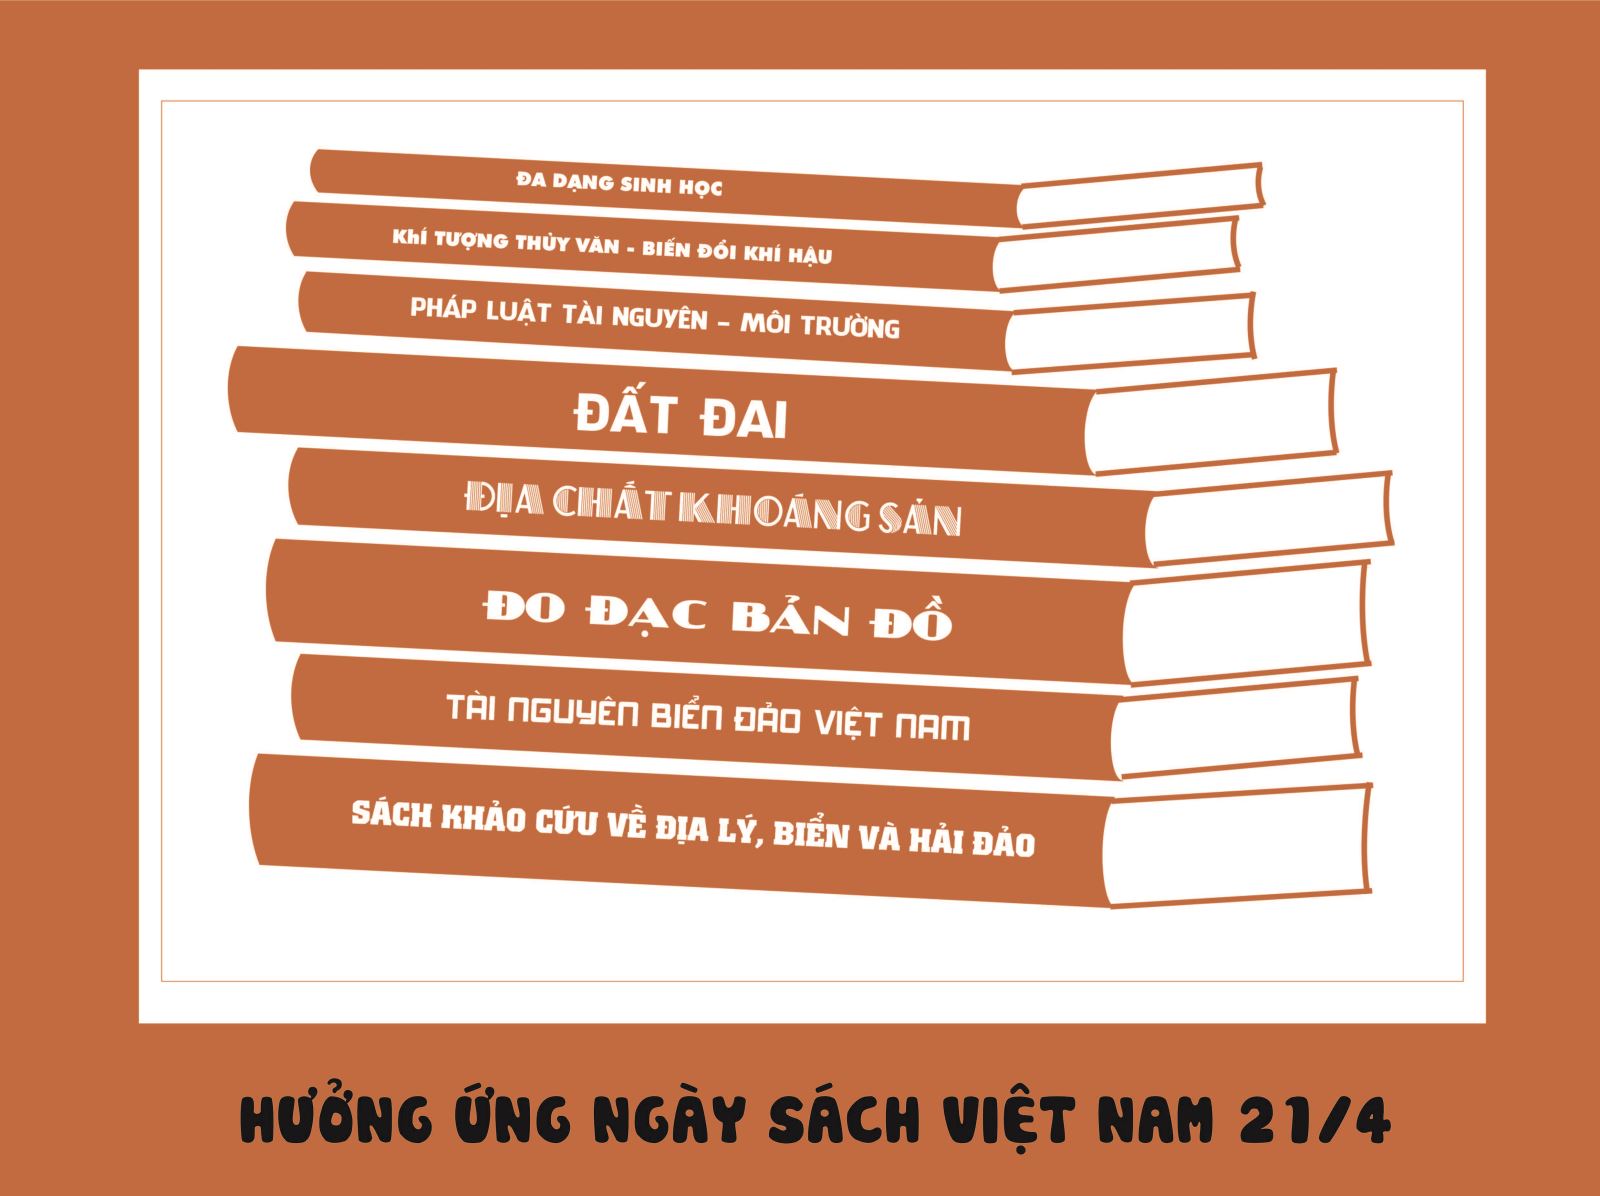 Hưởng ứng ngày sách Việt Nam 21 tháng 4 năm 2017